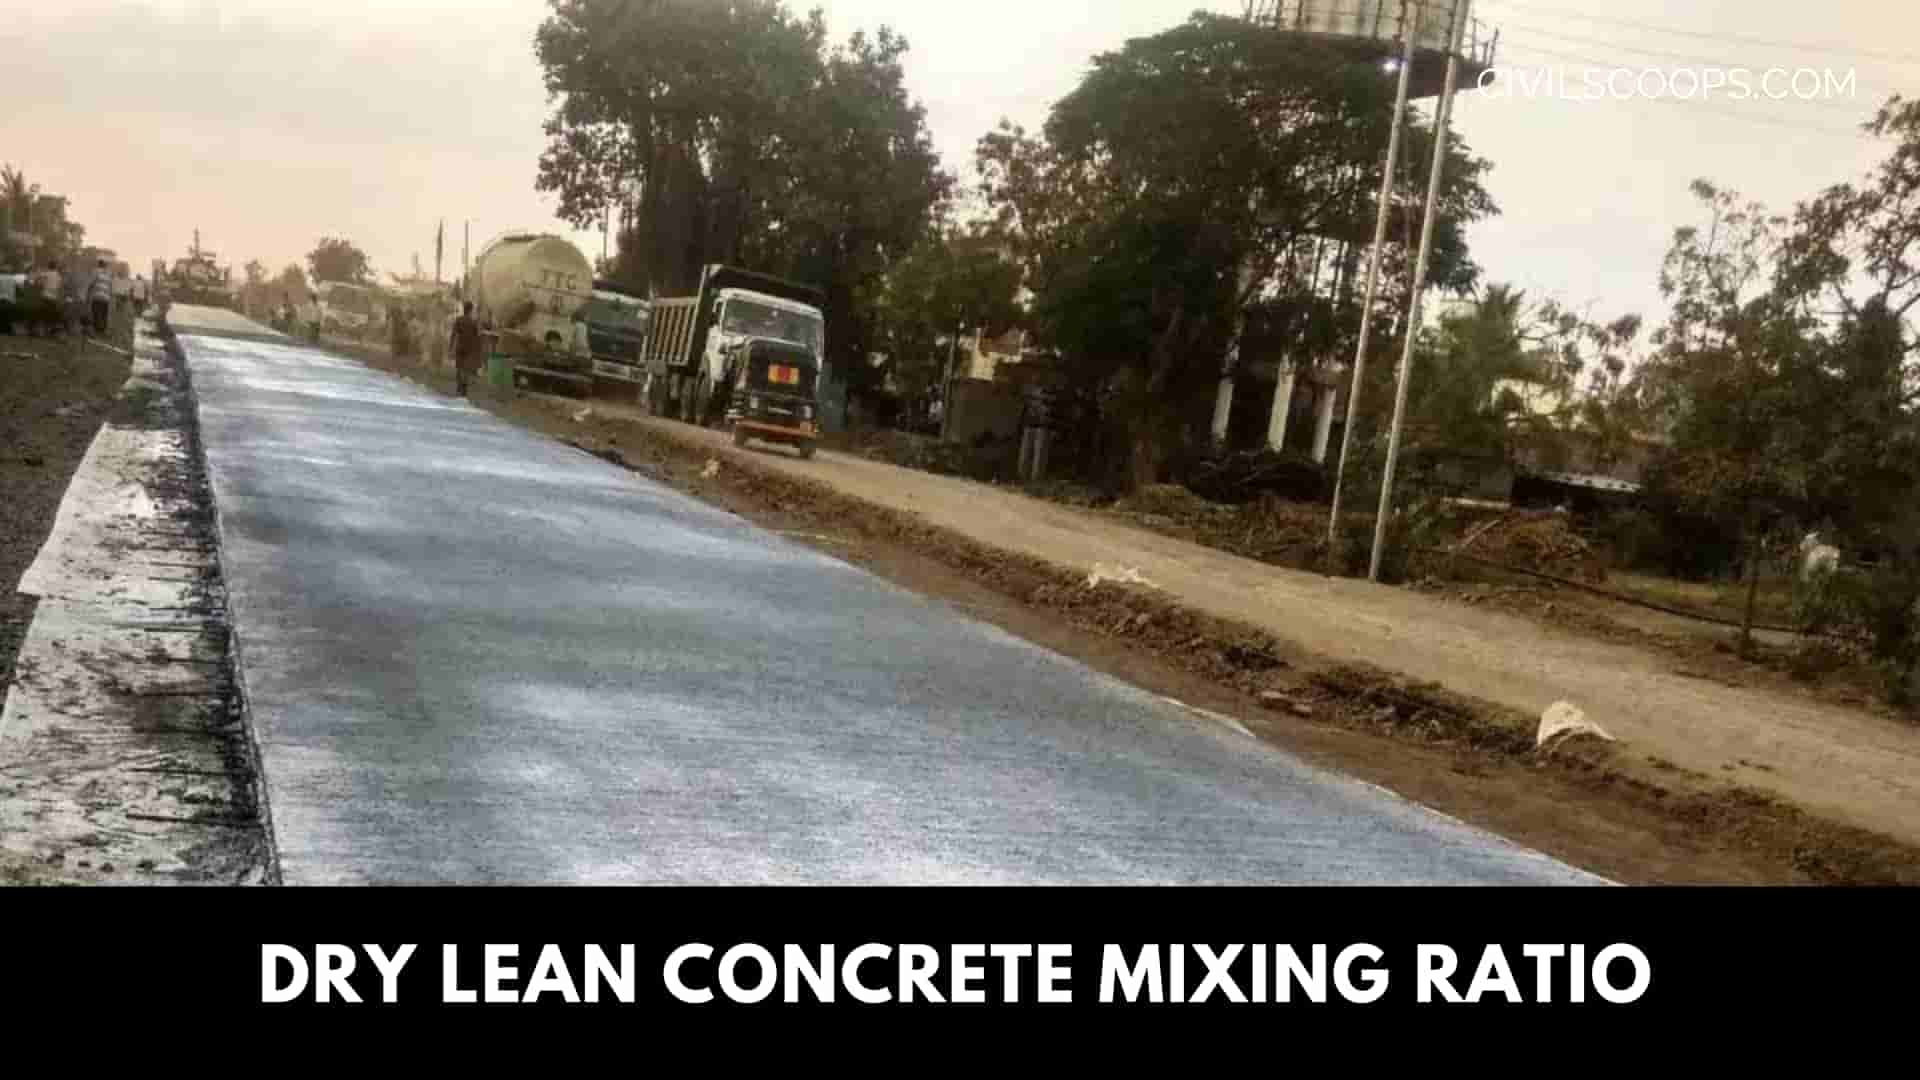 Dry lean concrete mixing ratio